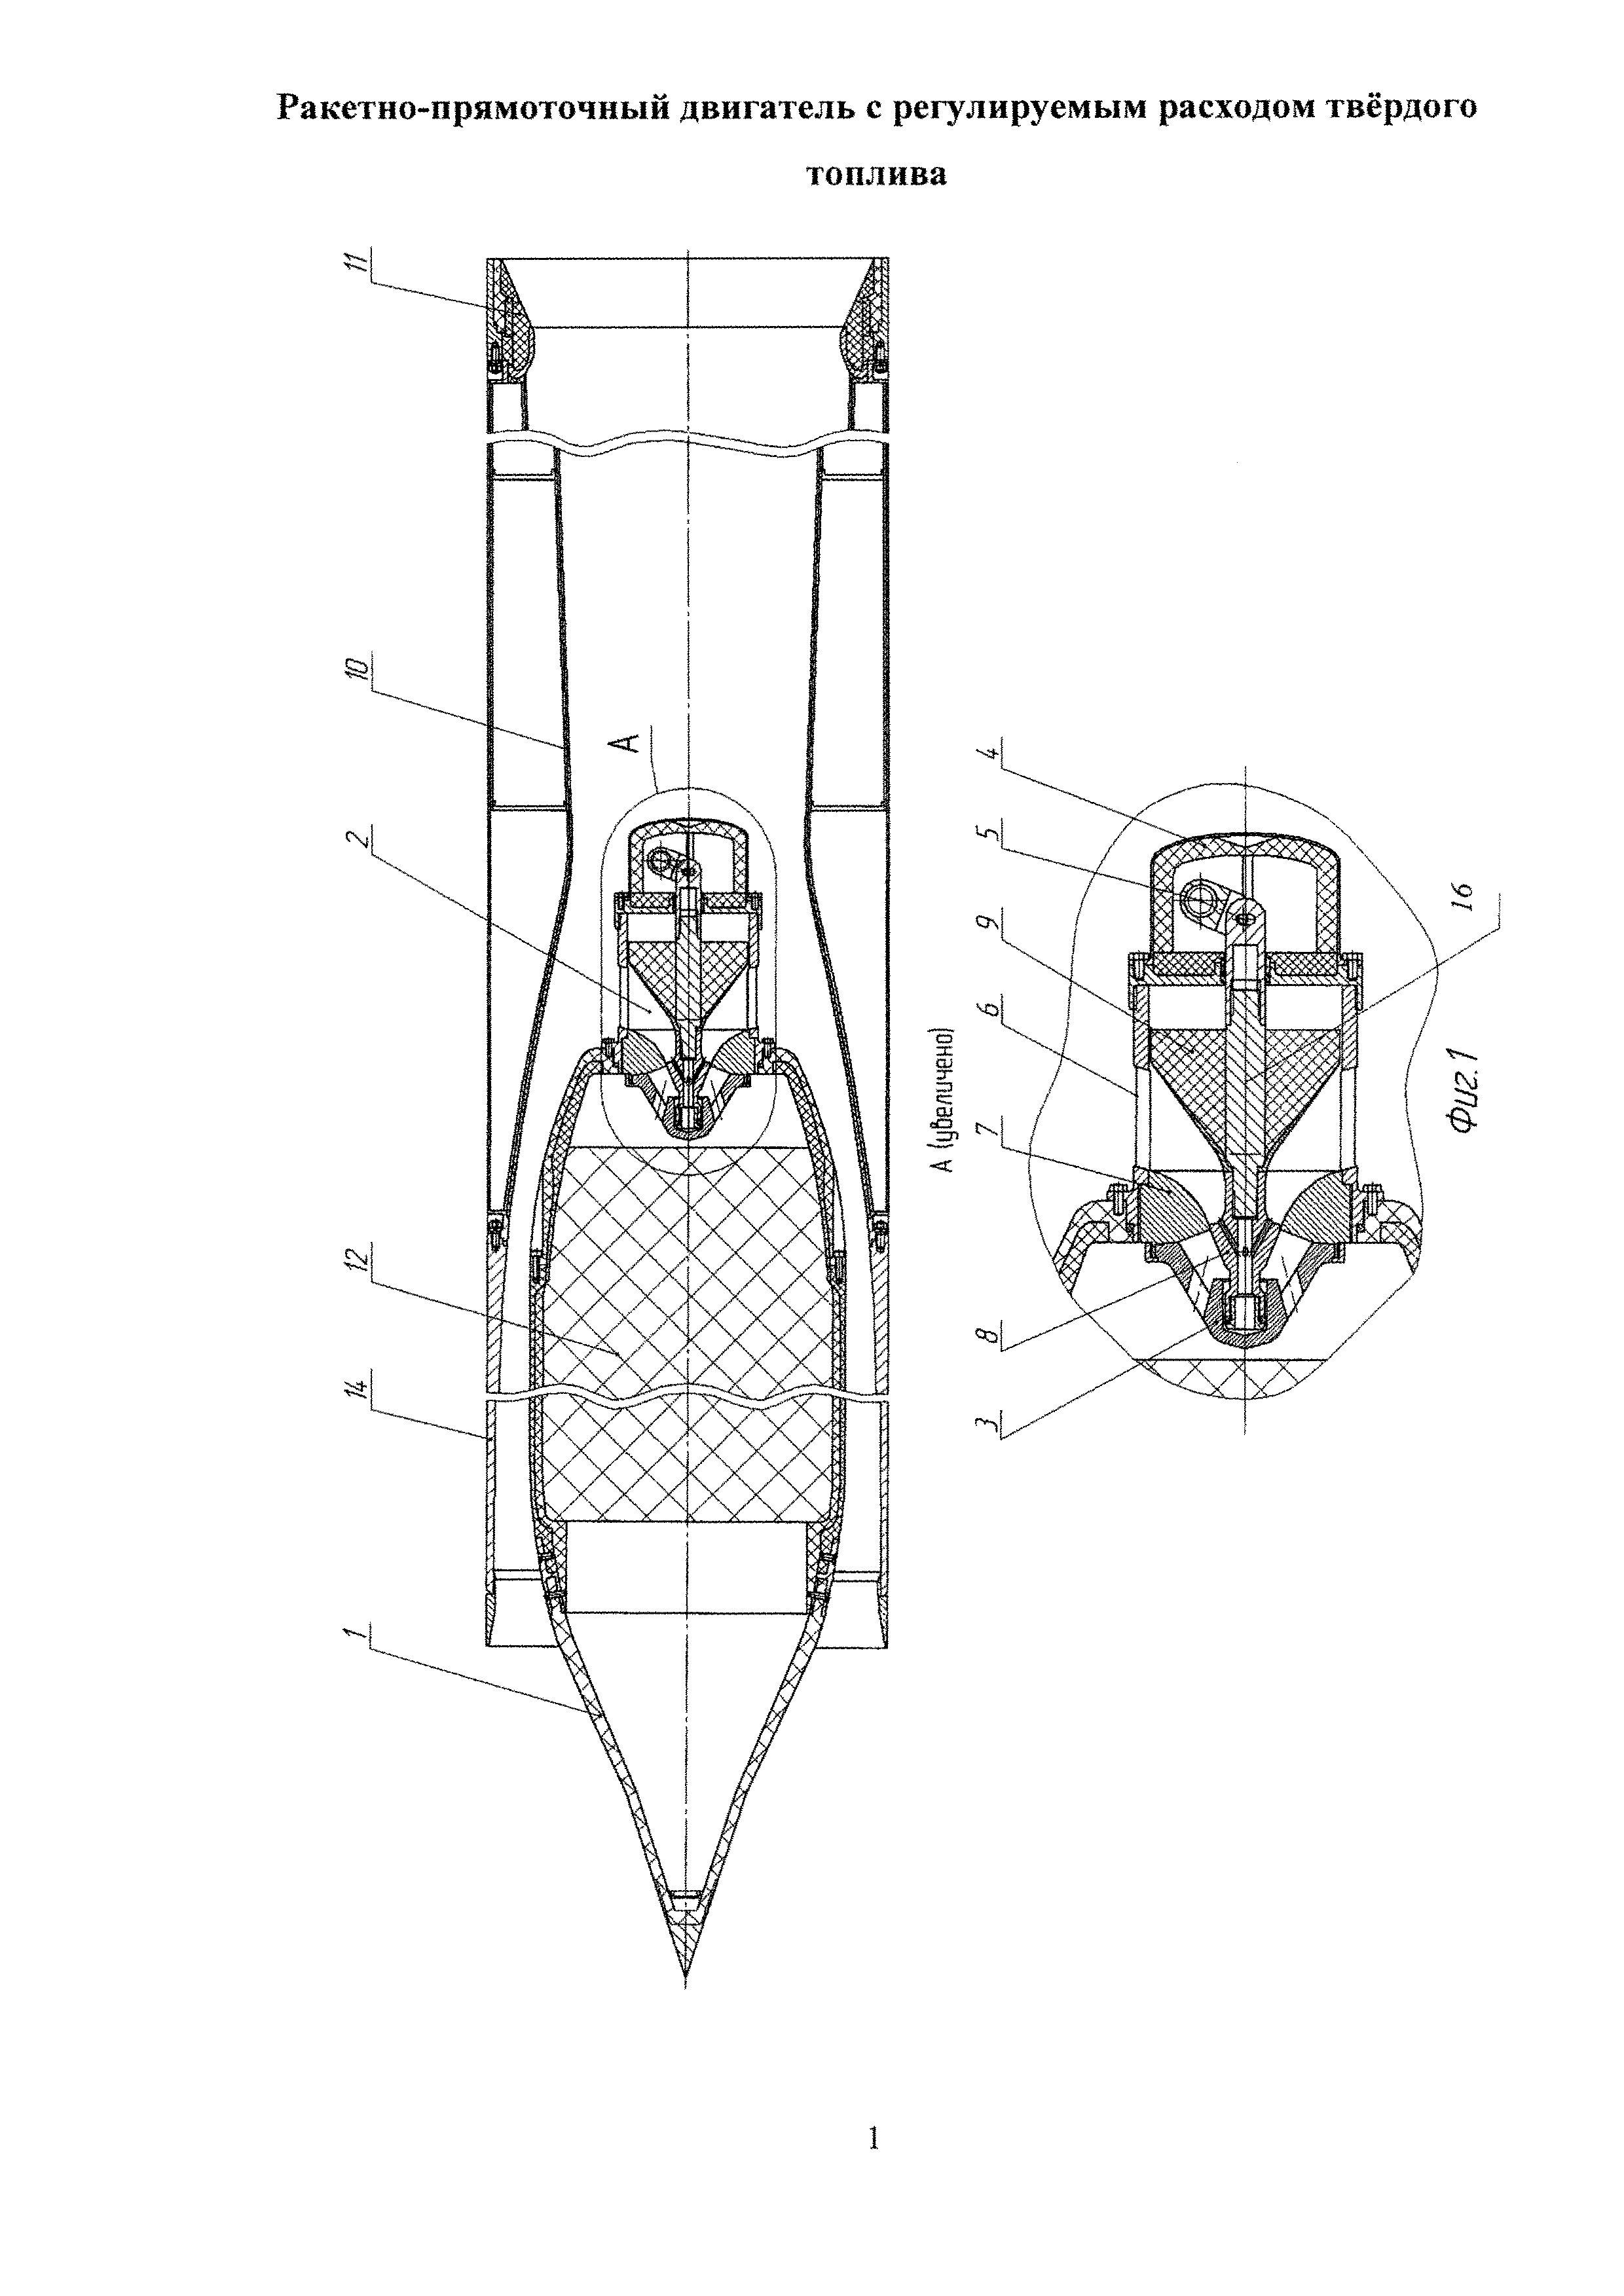 Ракетно-прямоточный двигатель с регулируемым расходом твёрдого топлива